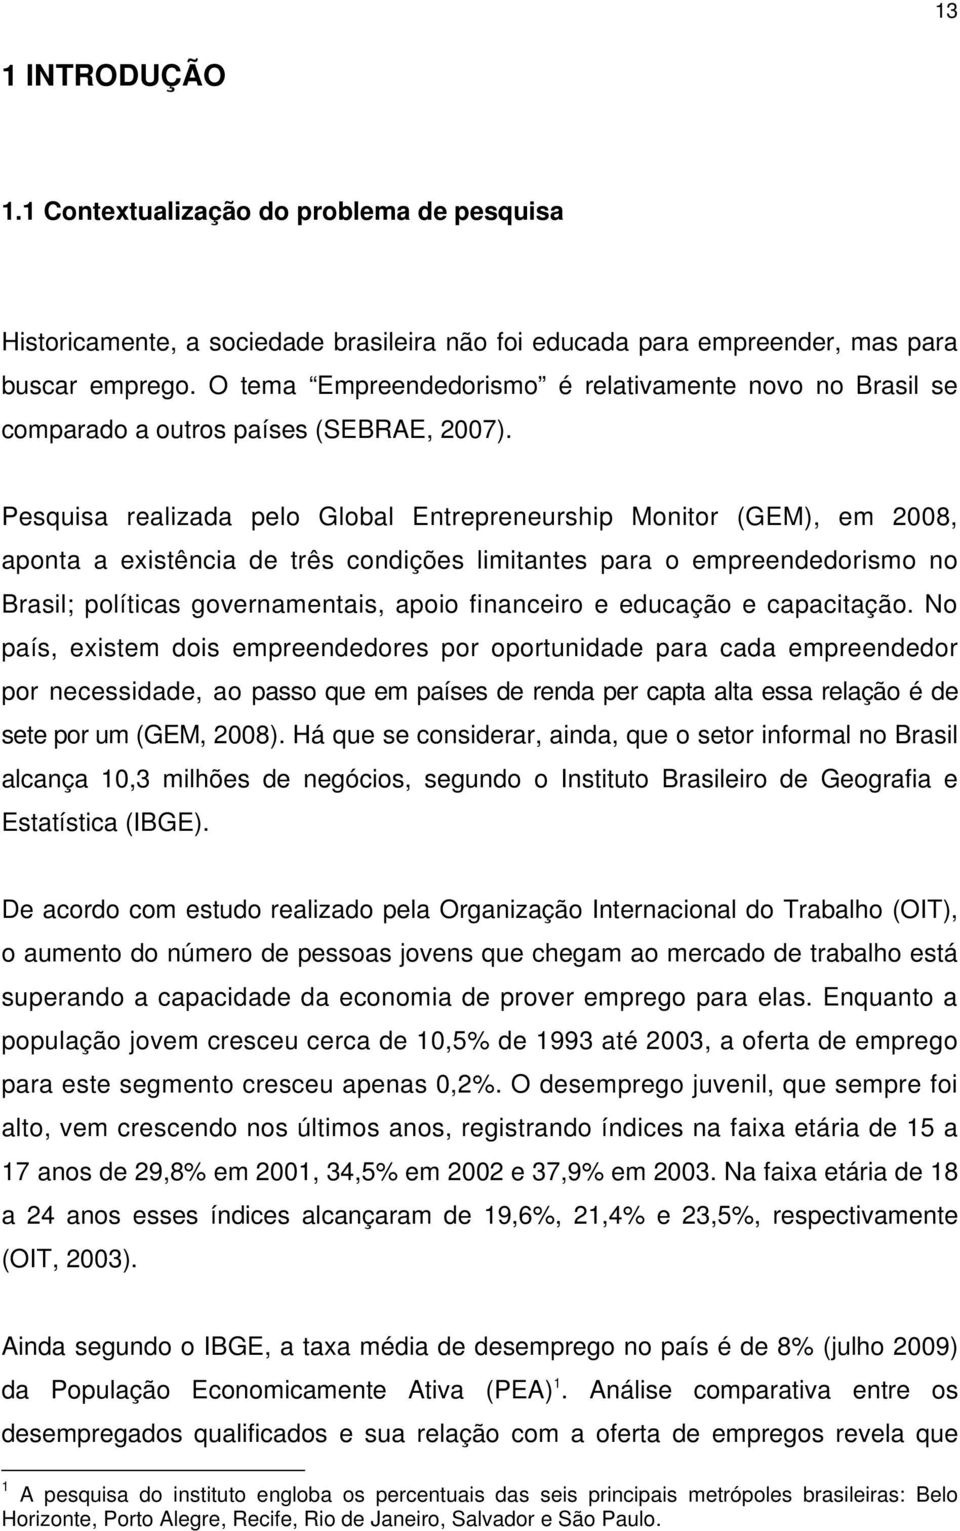 Pesquisa realizada pelo Global Entrepreneurship Monitor (GEM), em 2008, aponta a existência de três condições limitantes para o empreendedorismo no Brasil; políticas governamentais, apoio financeiro